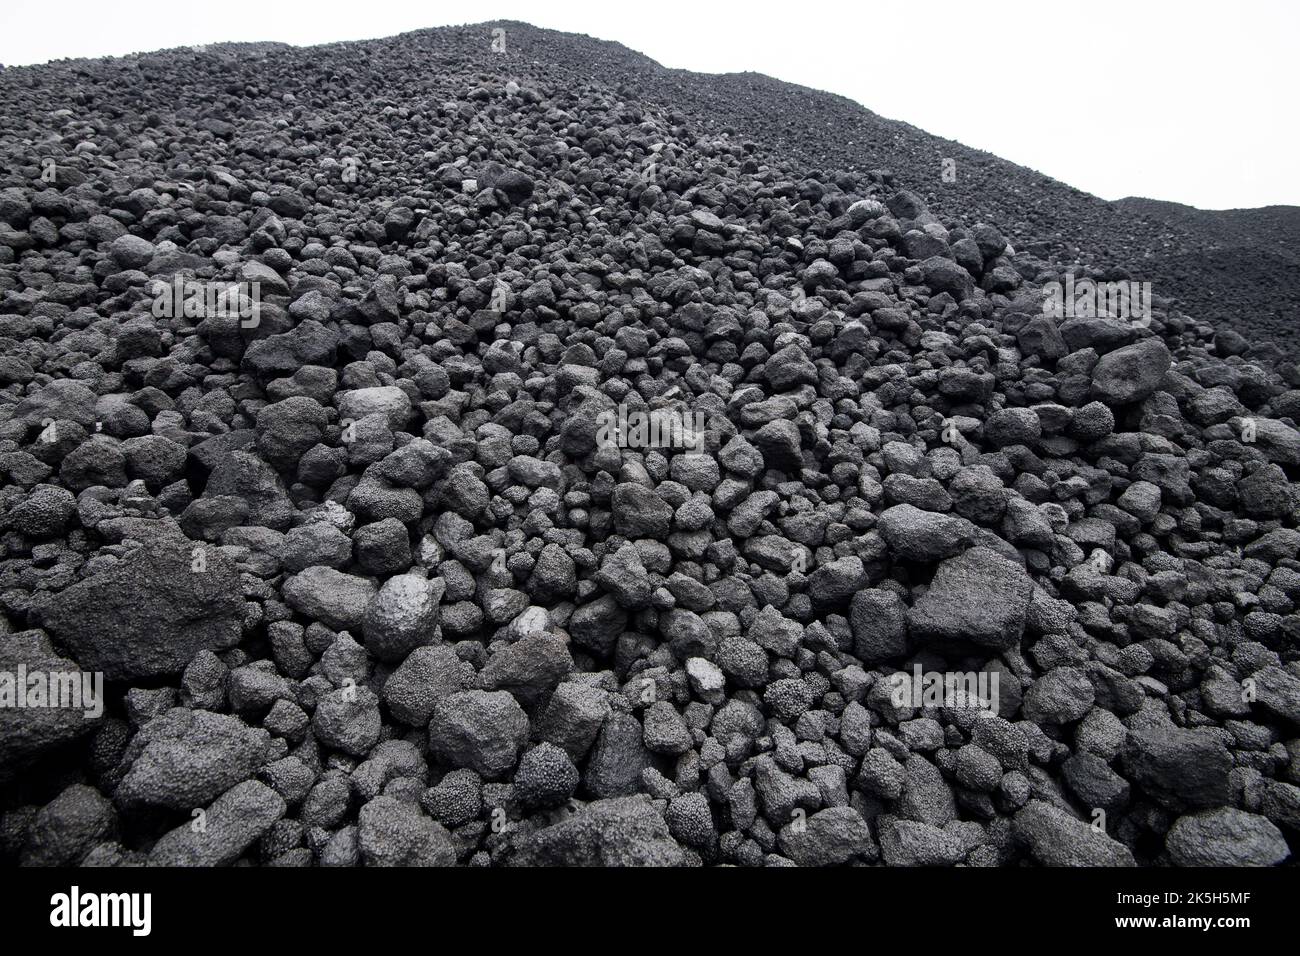 Imported coal in Port of Gdansk, Poland © Wojciech Strozyk / Alamy Stock Photo Stock Photo